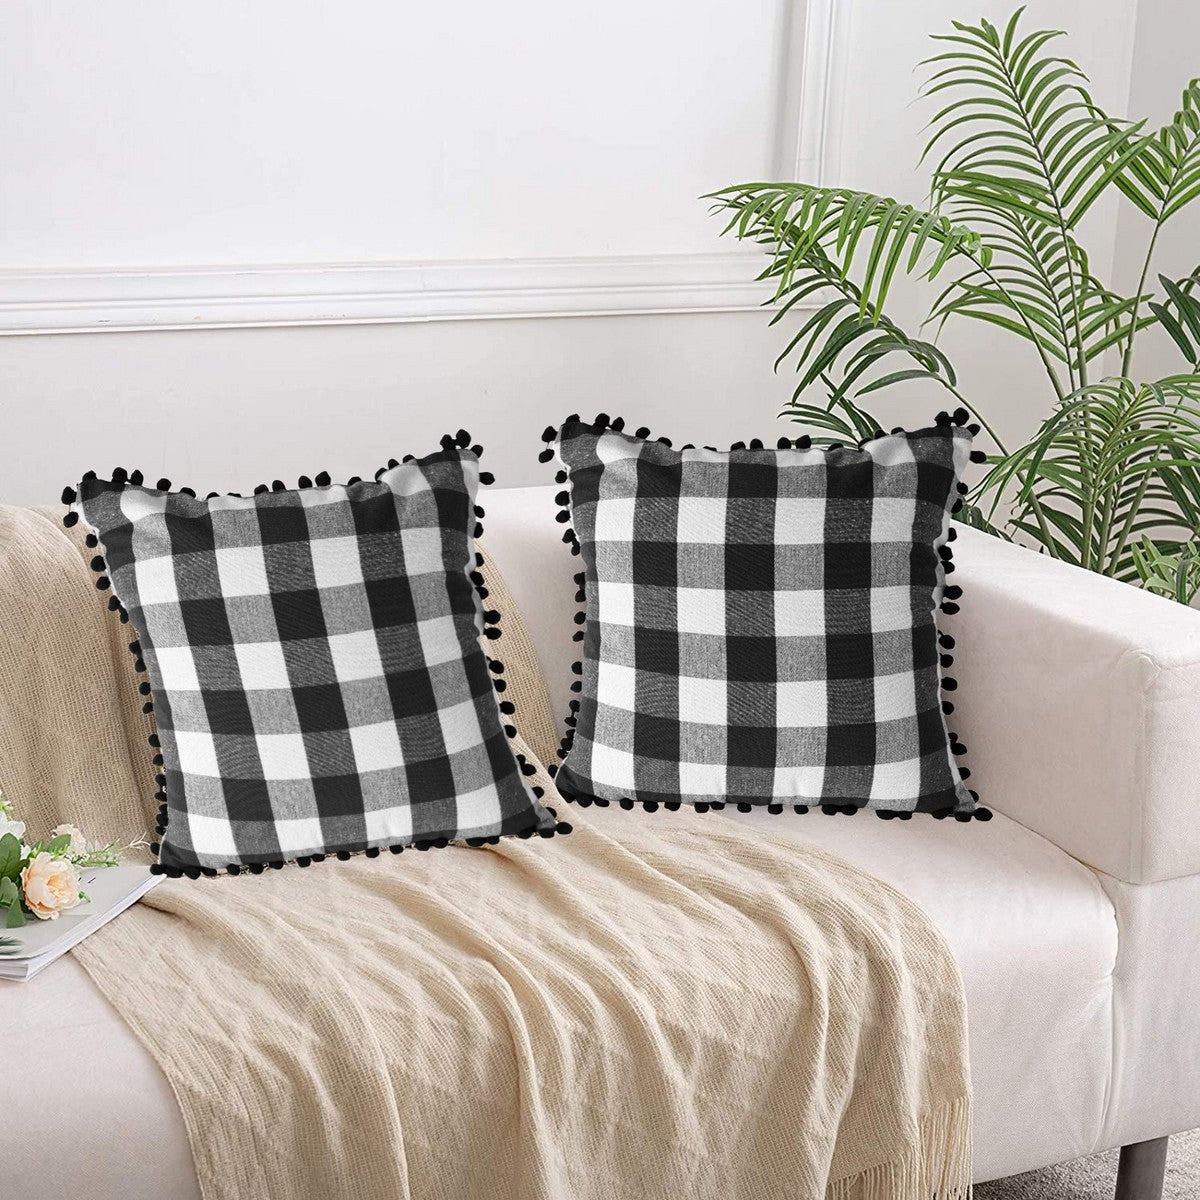 Lushomes Square Cushion Cover with Pom Pom, Cotton Sofa Pillow Cover Set of 2, 18x18 Inch, Big Checks, Black and White Checks, Pillow Cushions Covers (Pack of 2, 45x45 Cms)